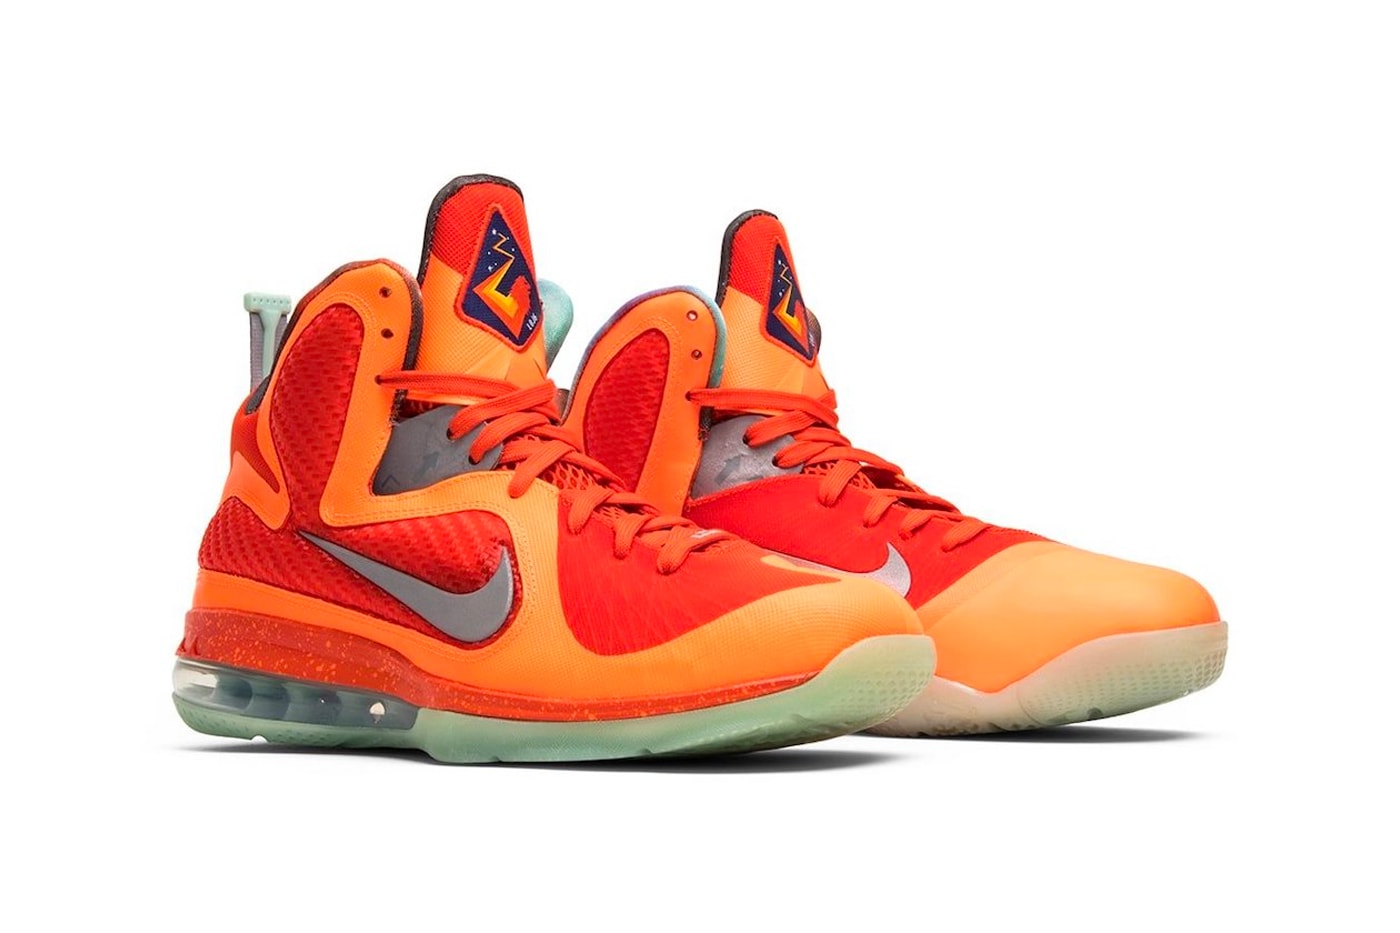 Nike LeBron 9 “Big Bang” Release Date footwear sneakers swooshes All-Star Weekend mesh Total Orange Metallic Silver Team Orange Mango